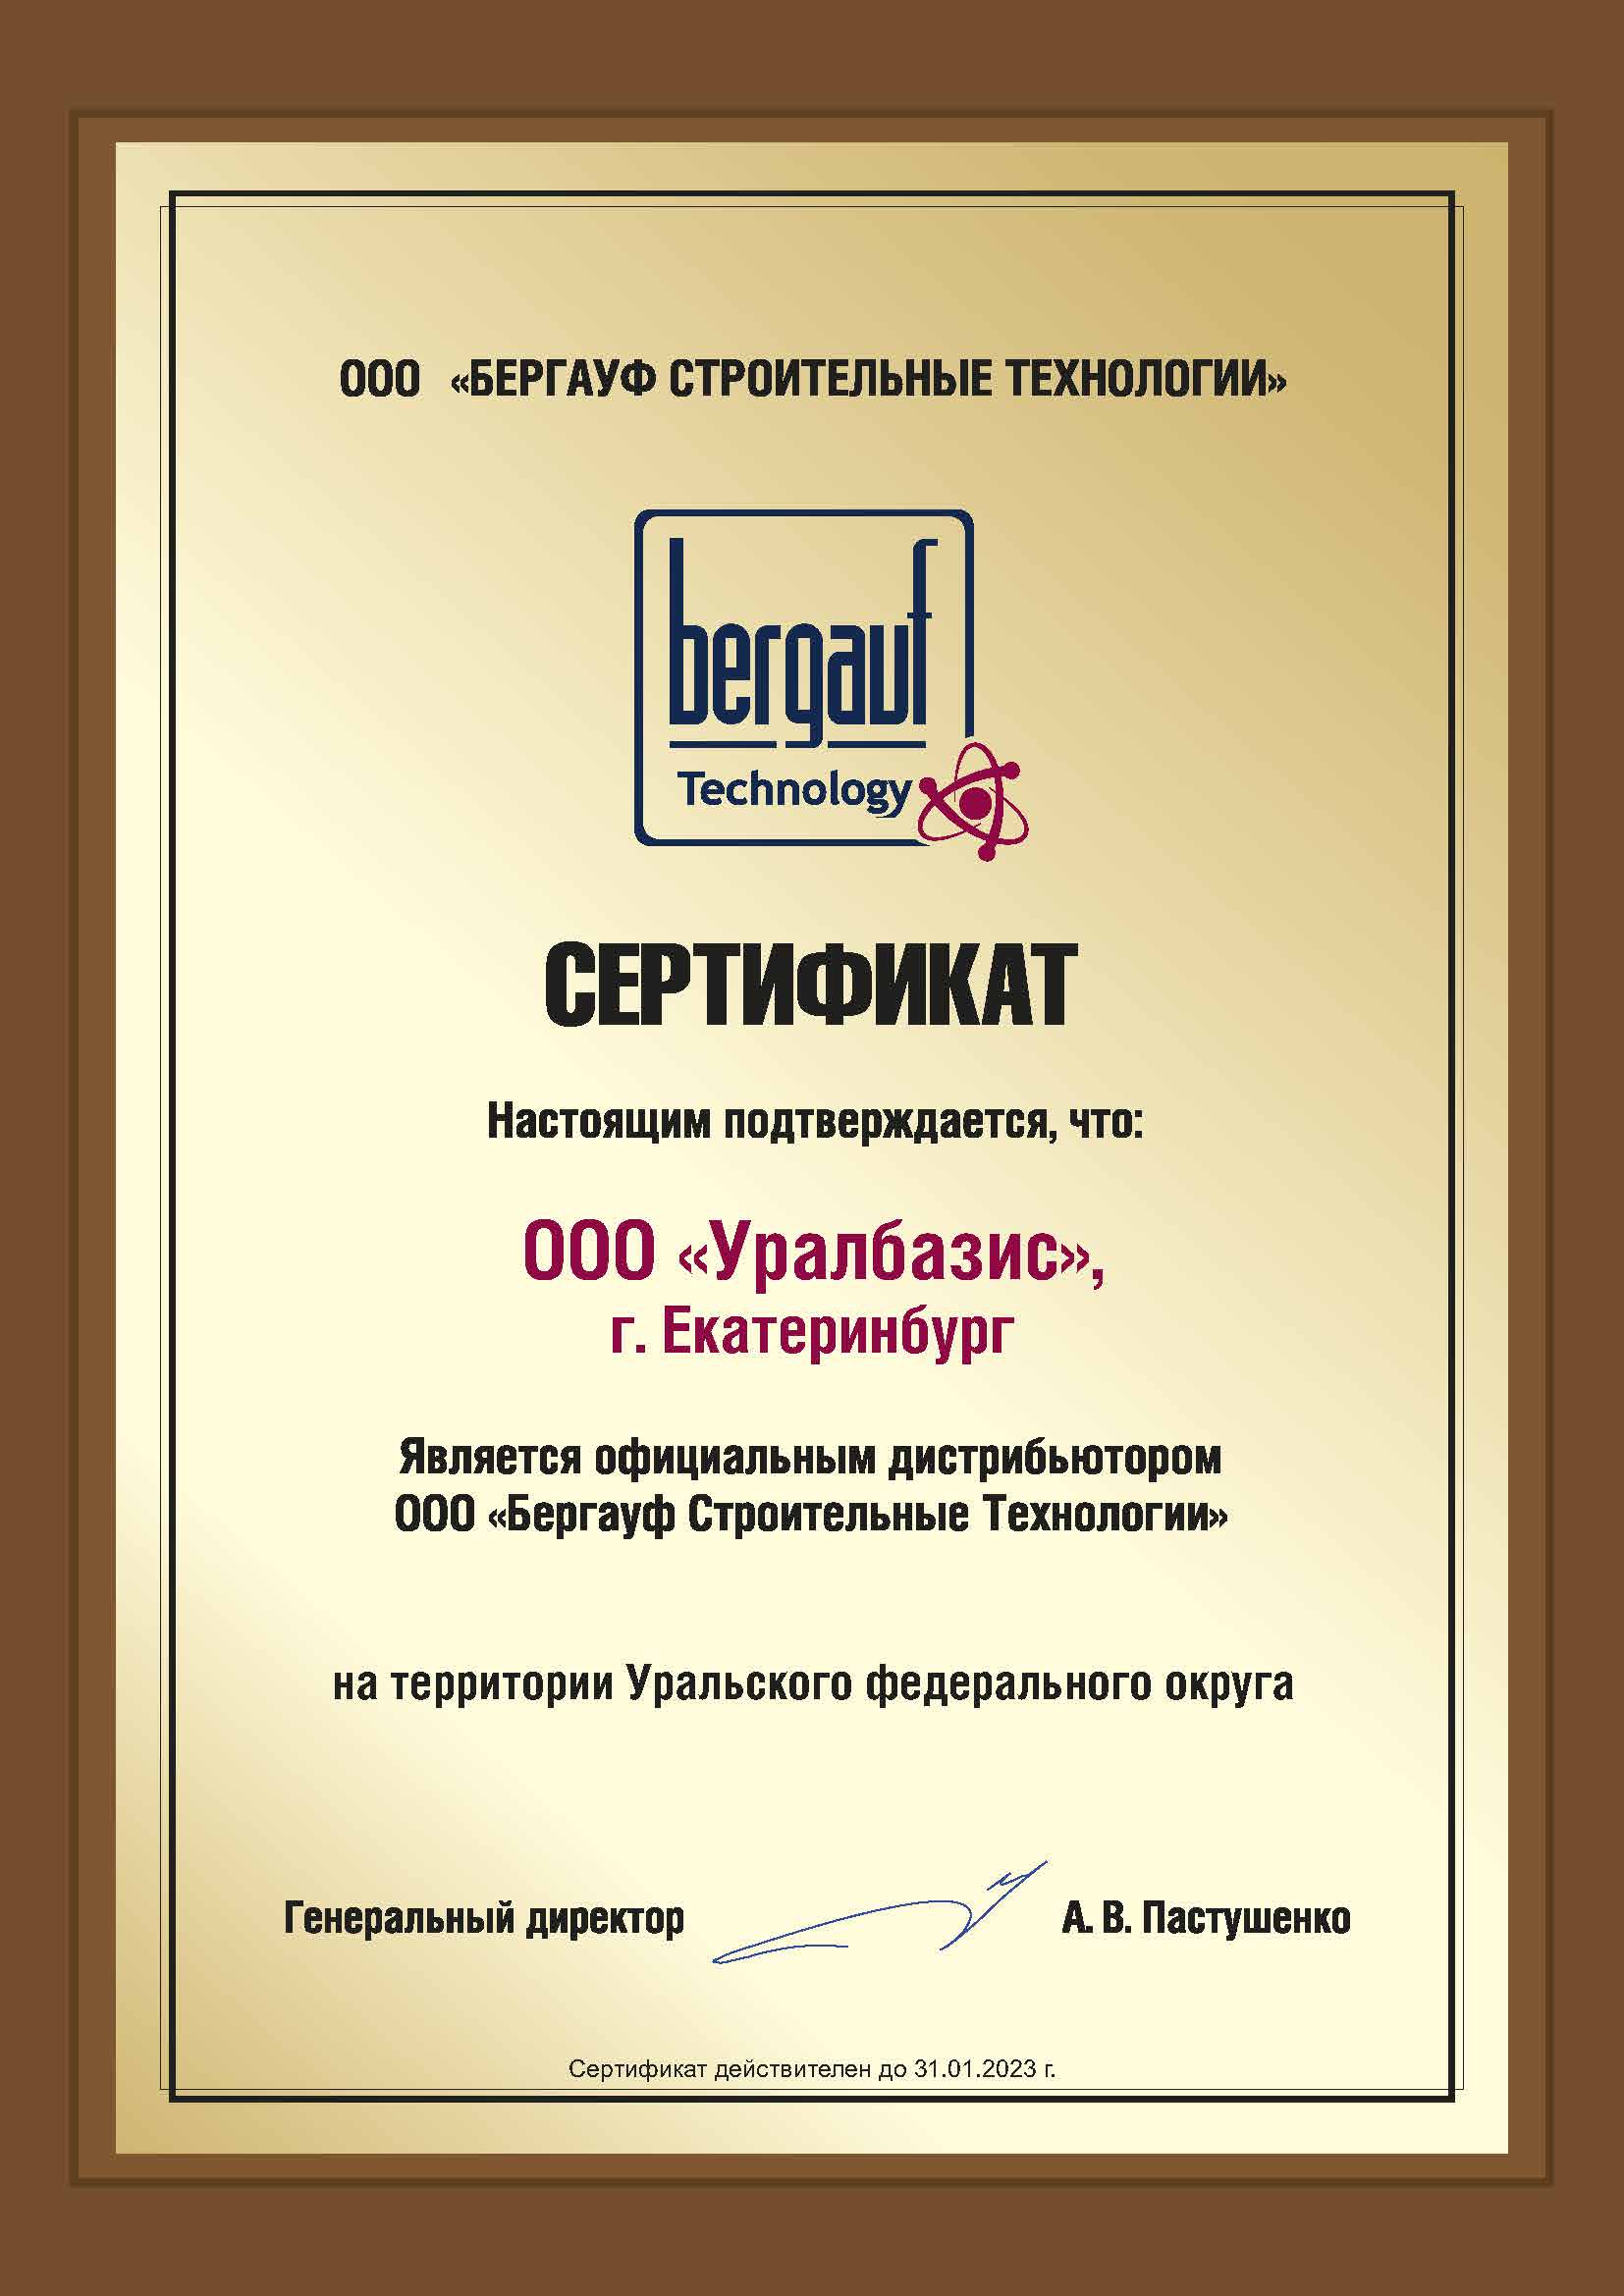 Уралбазис - официальный дистрибьютор Бергауф